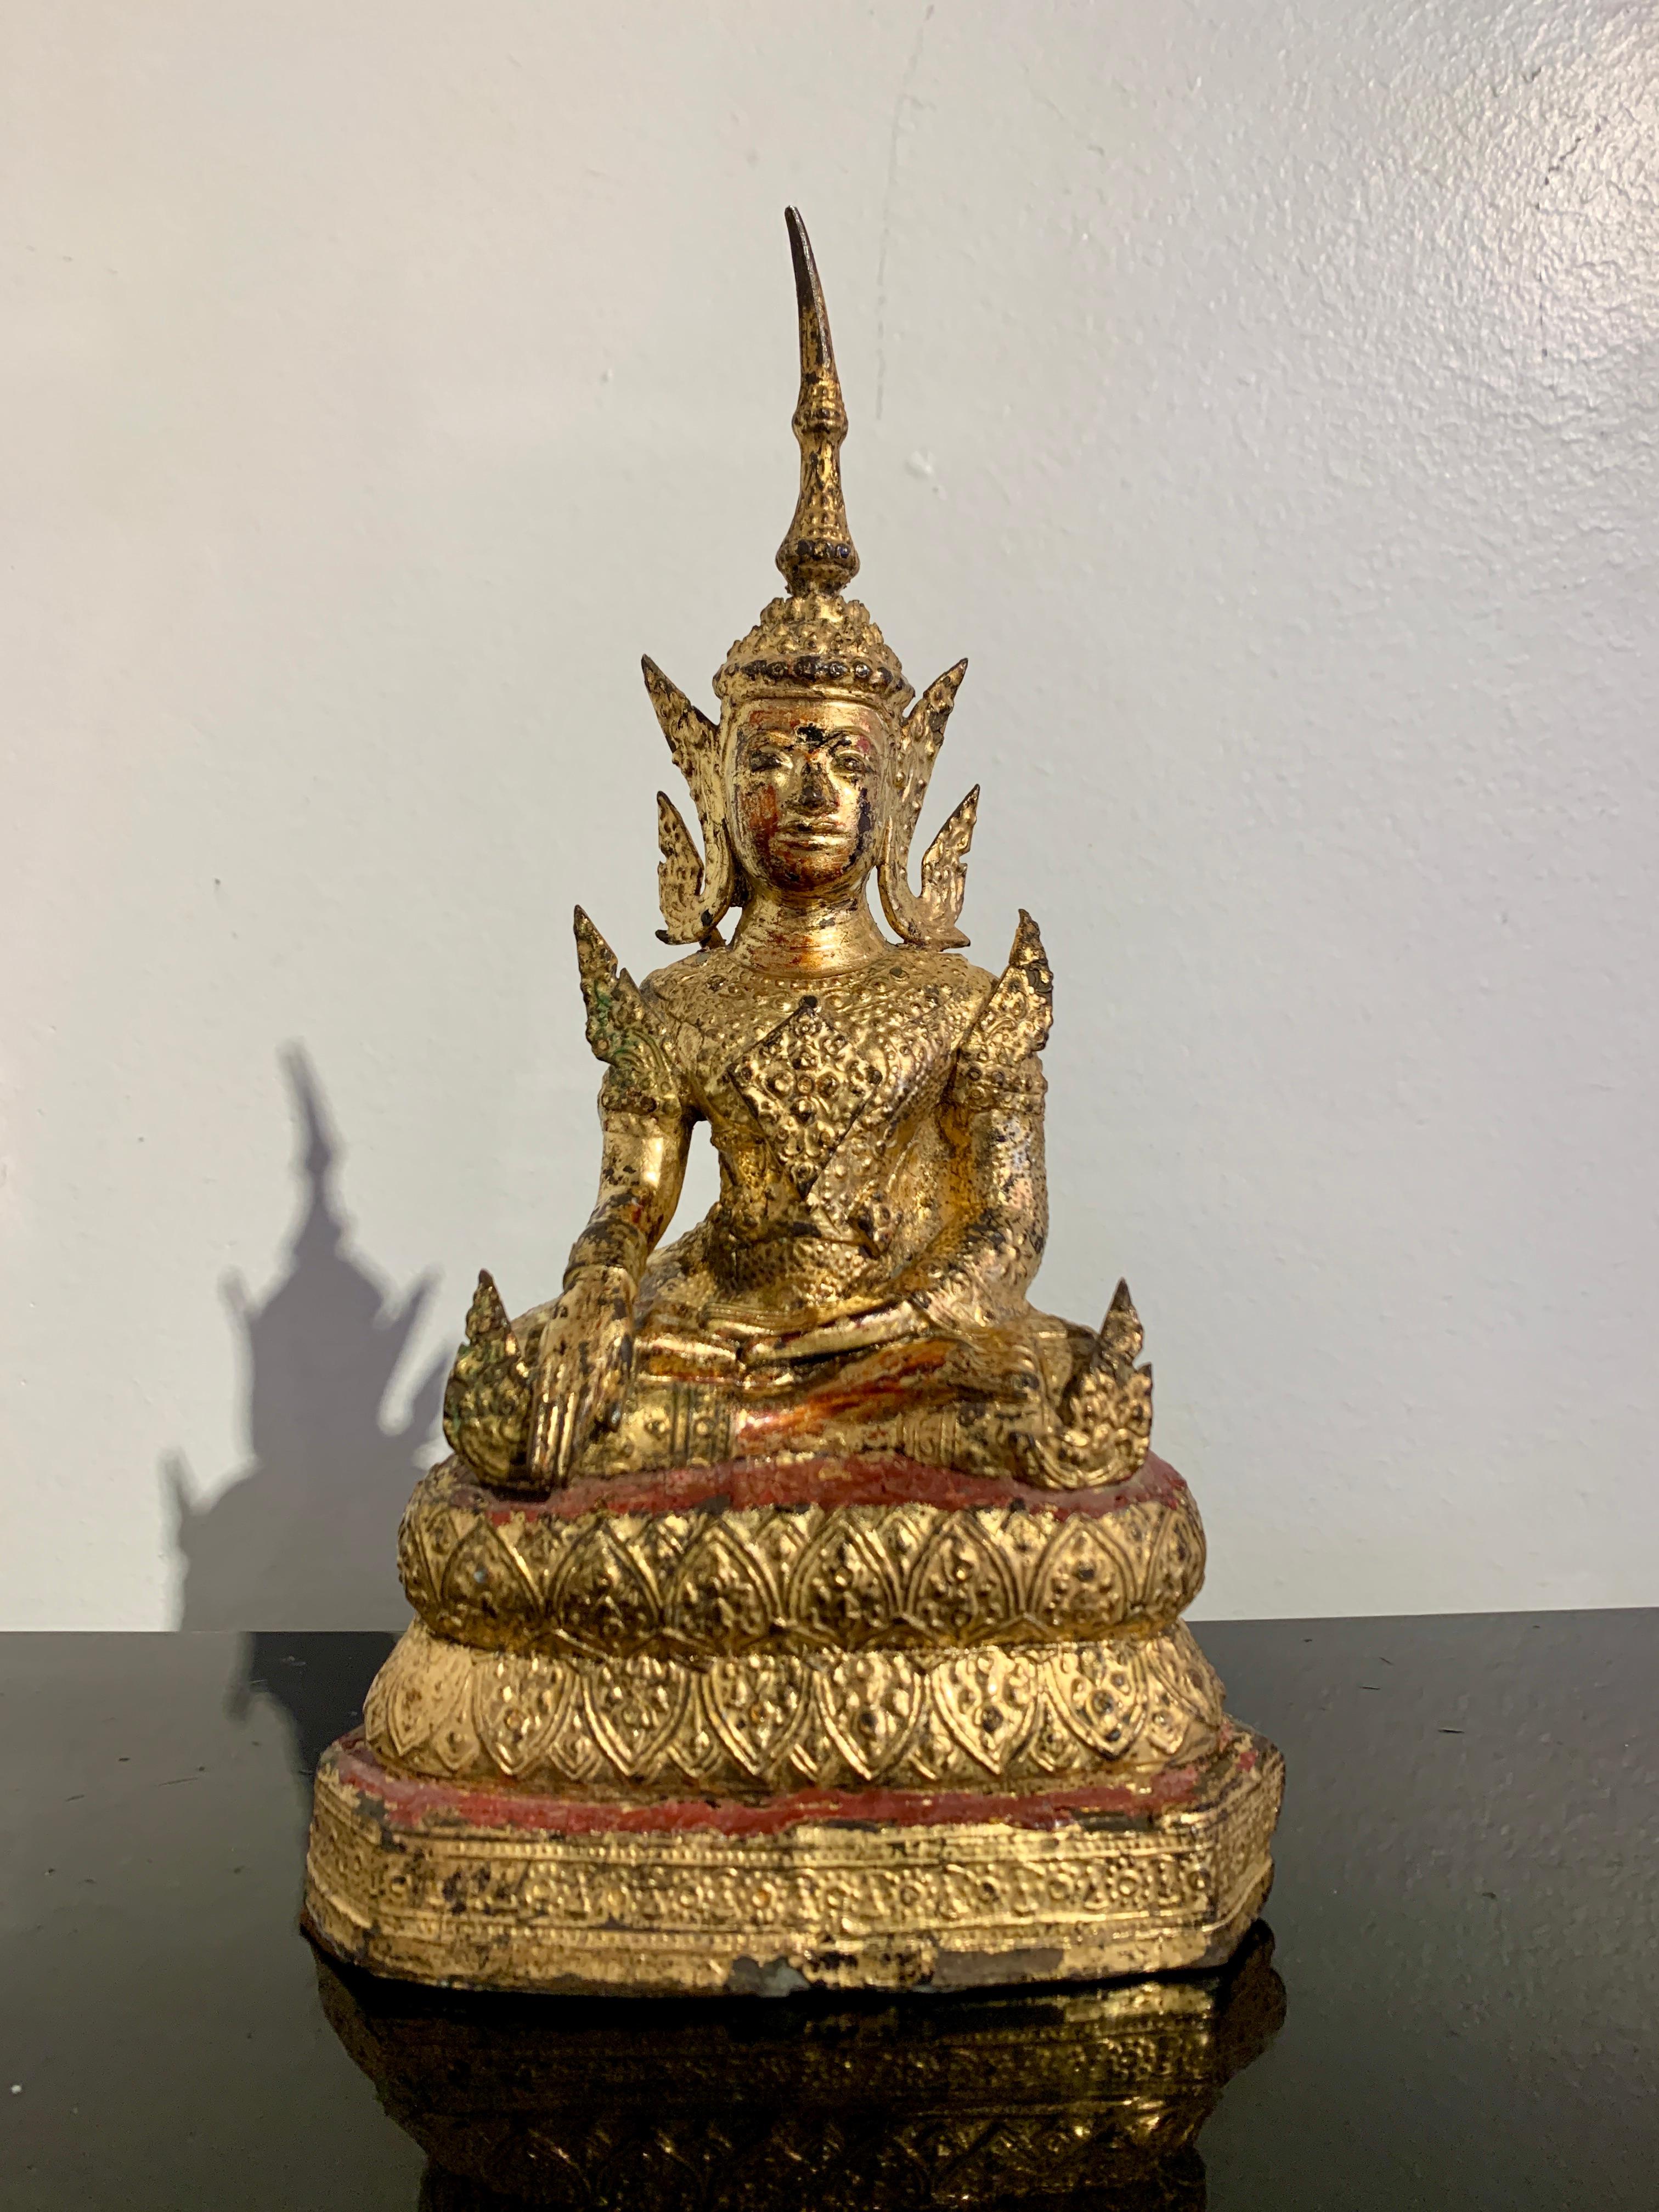 Magnifique figure de Bouddha en costume royal en bronze laqué et doré de la période Rattanakosin, milieu du XIXe siècle, Thaïlande.

La jolie figure représente le Bouddha en bhumisparsha mudra, le geste qui consiste à appeler la terre à témoigner.